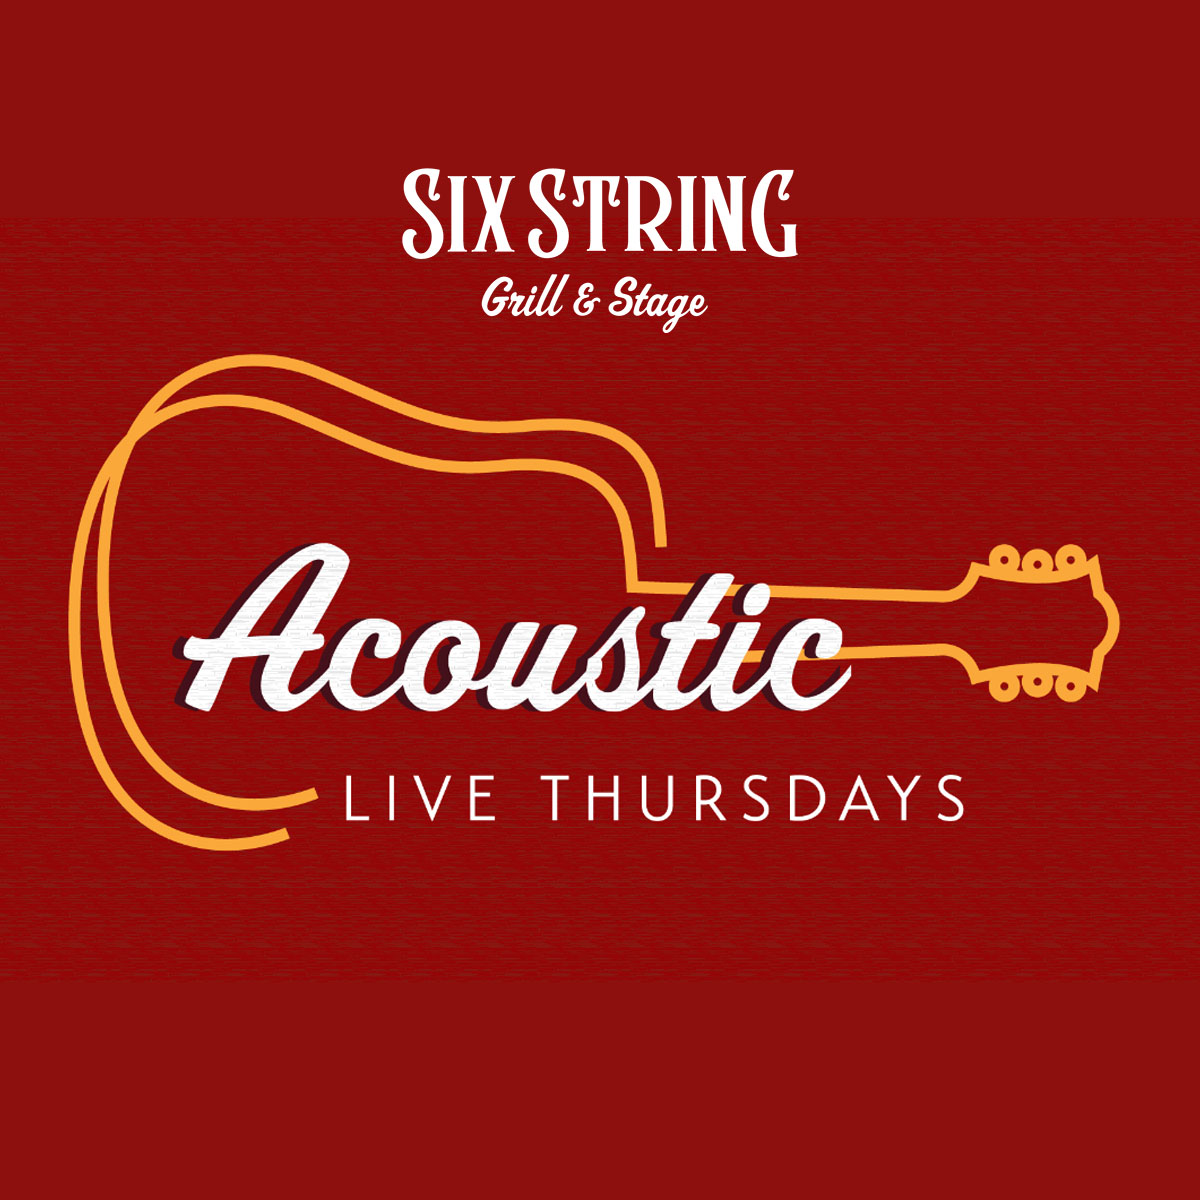 Six String Acoustic Live Thursdays